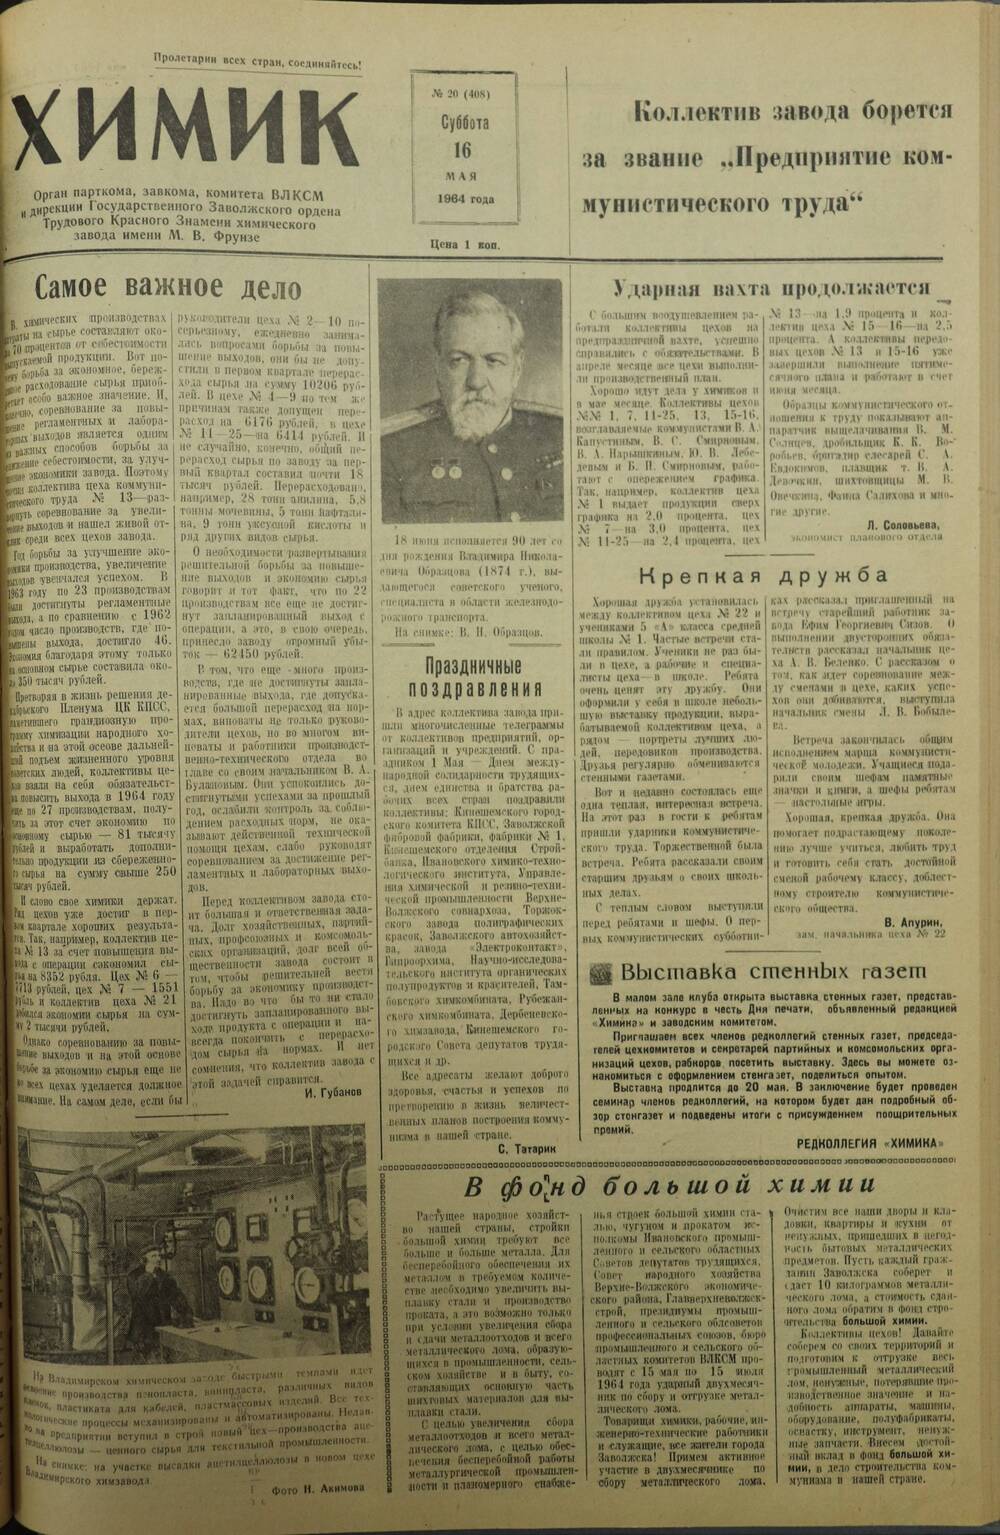 Газета «Химик» № 20 от 16 мая 1964 года.